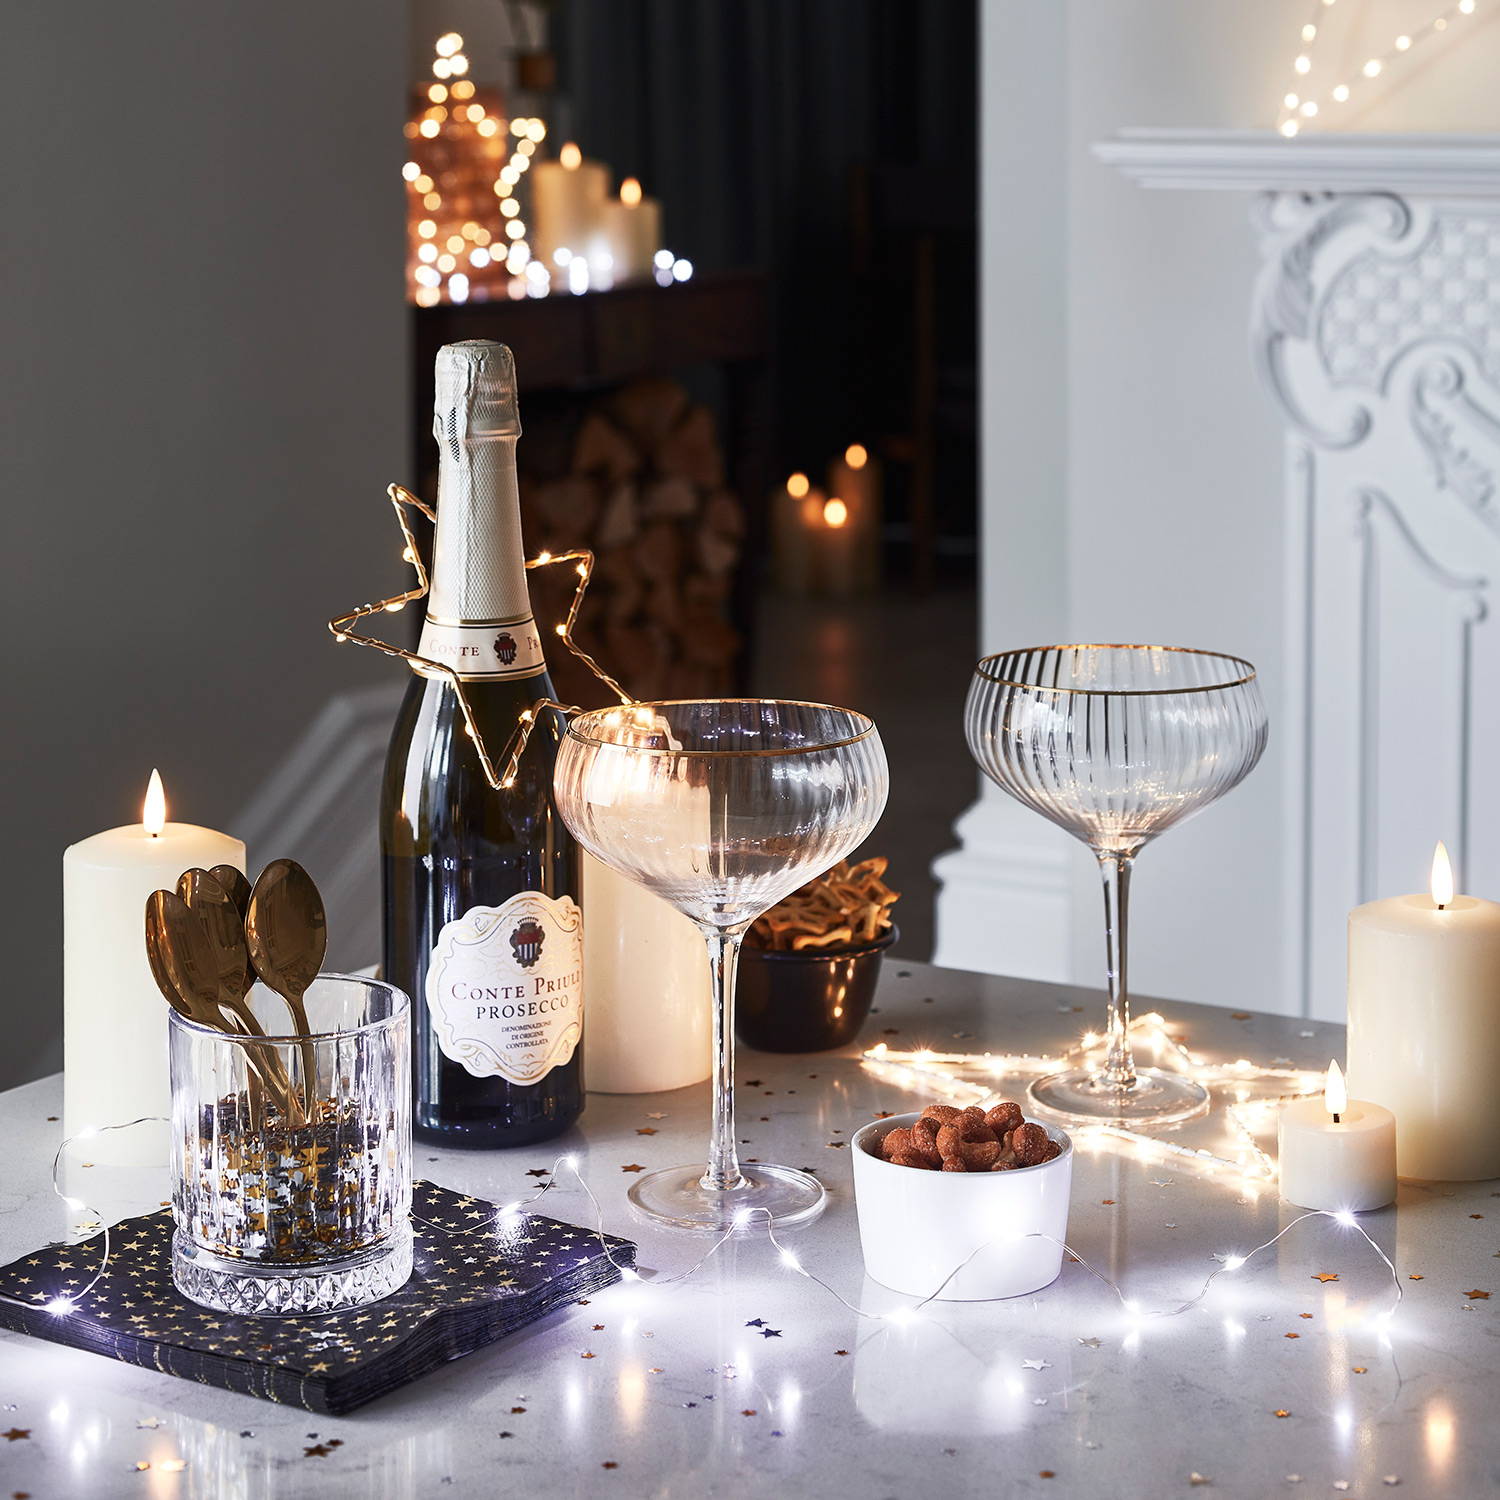 Tisch mit Prosecco, Gläsern, LED Kerzen und LED Sterne